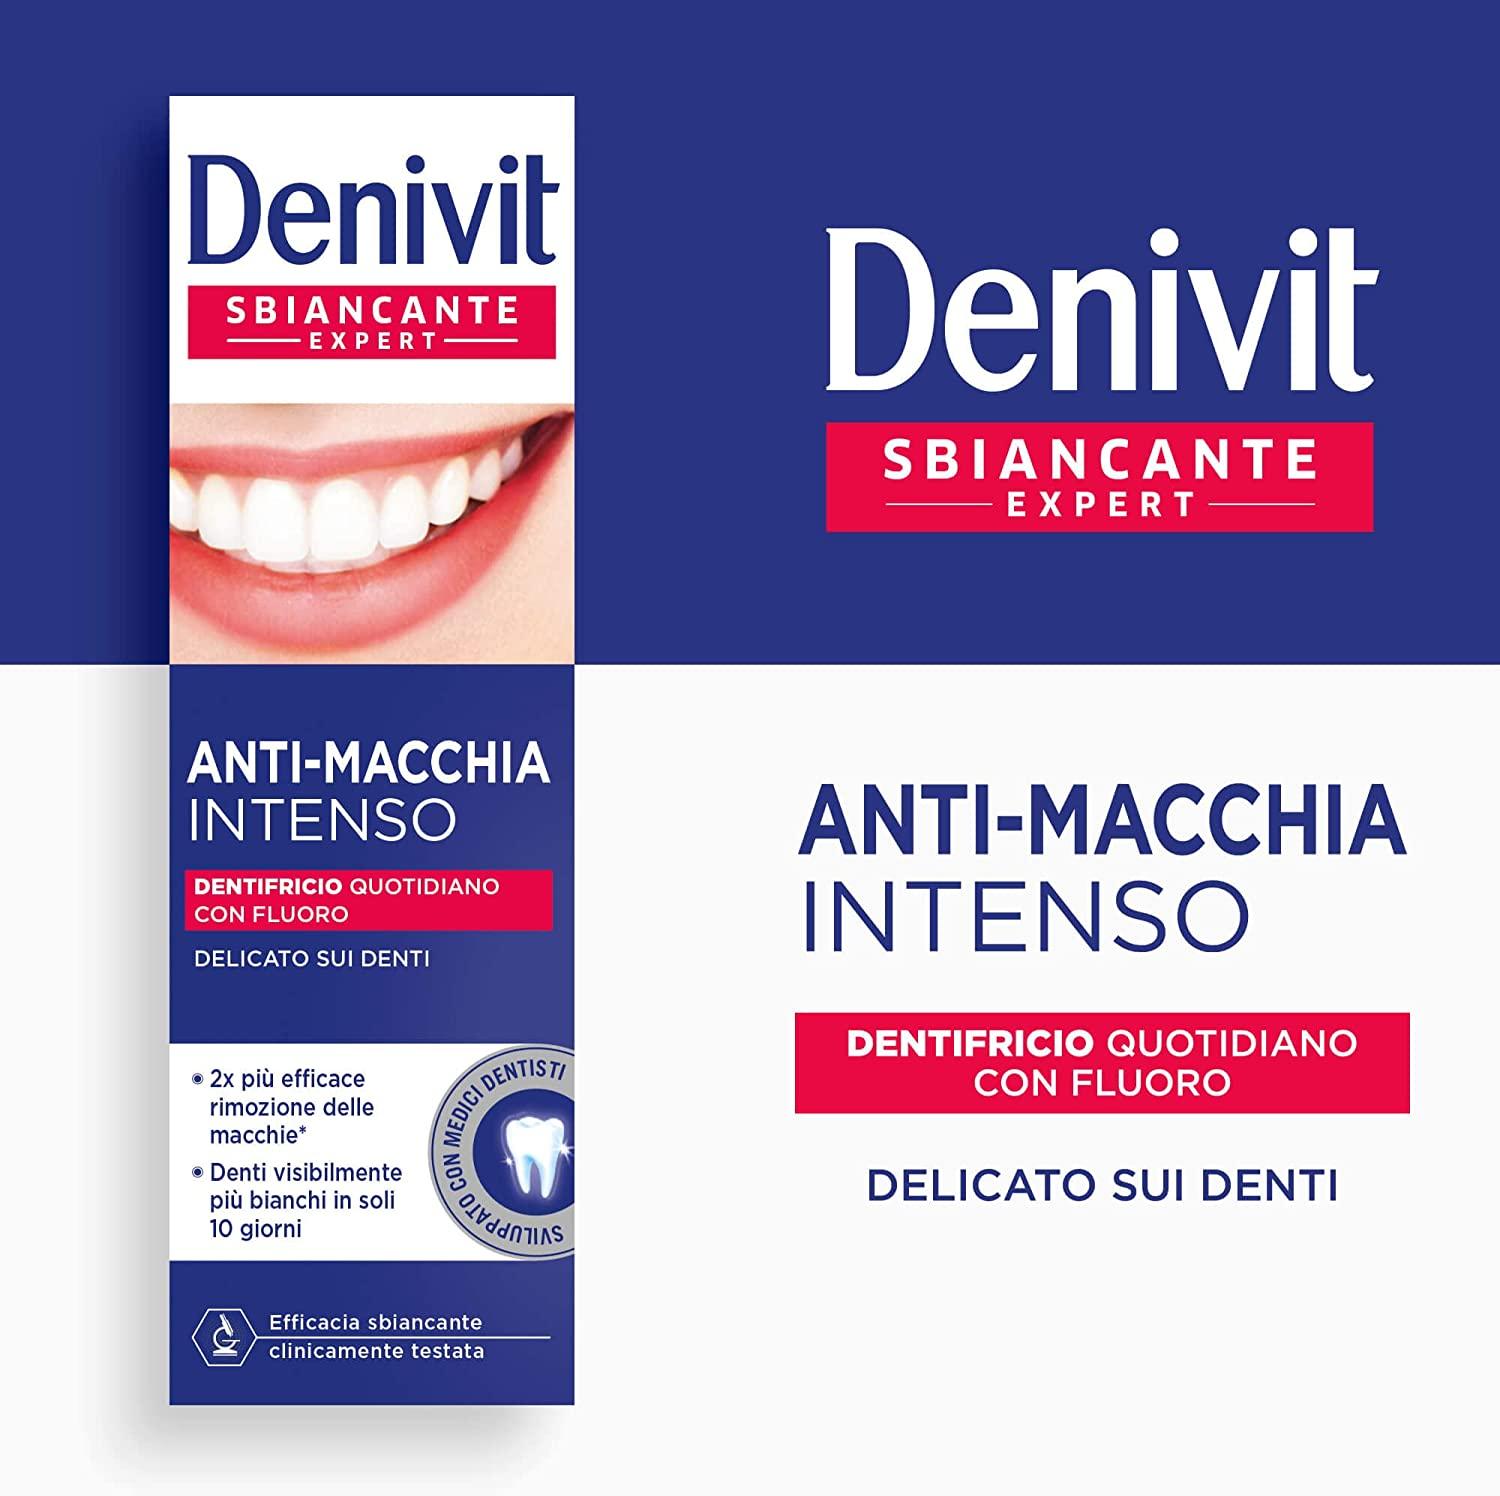 Denivit Dentifricio Antimacchia Intenso Sbiancante Expert Dentifricio Rimuove le Macchie 50 ml